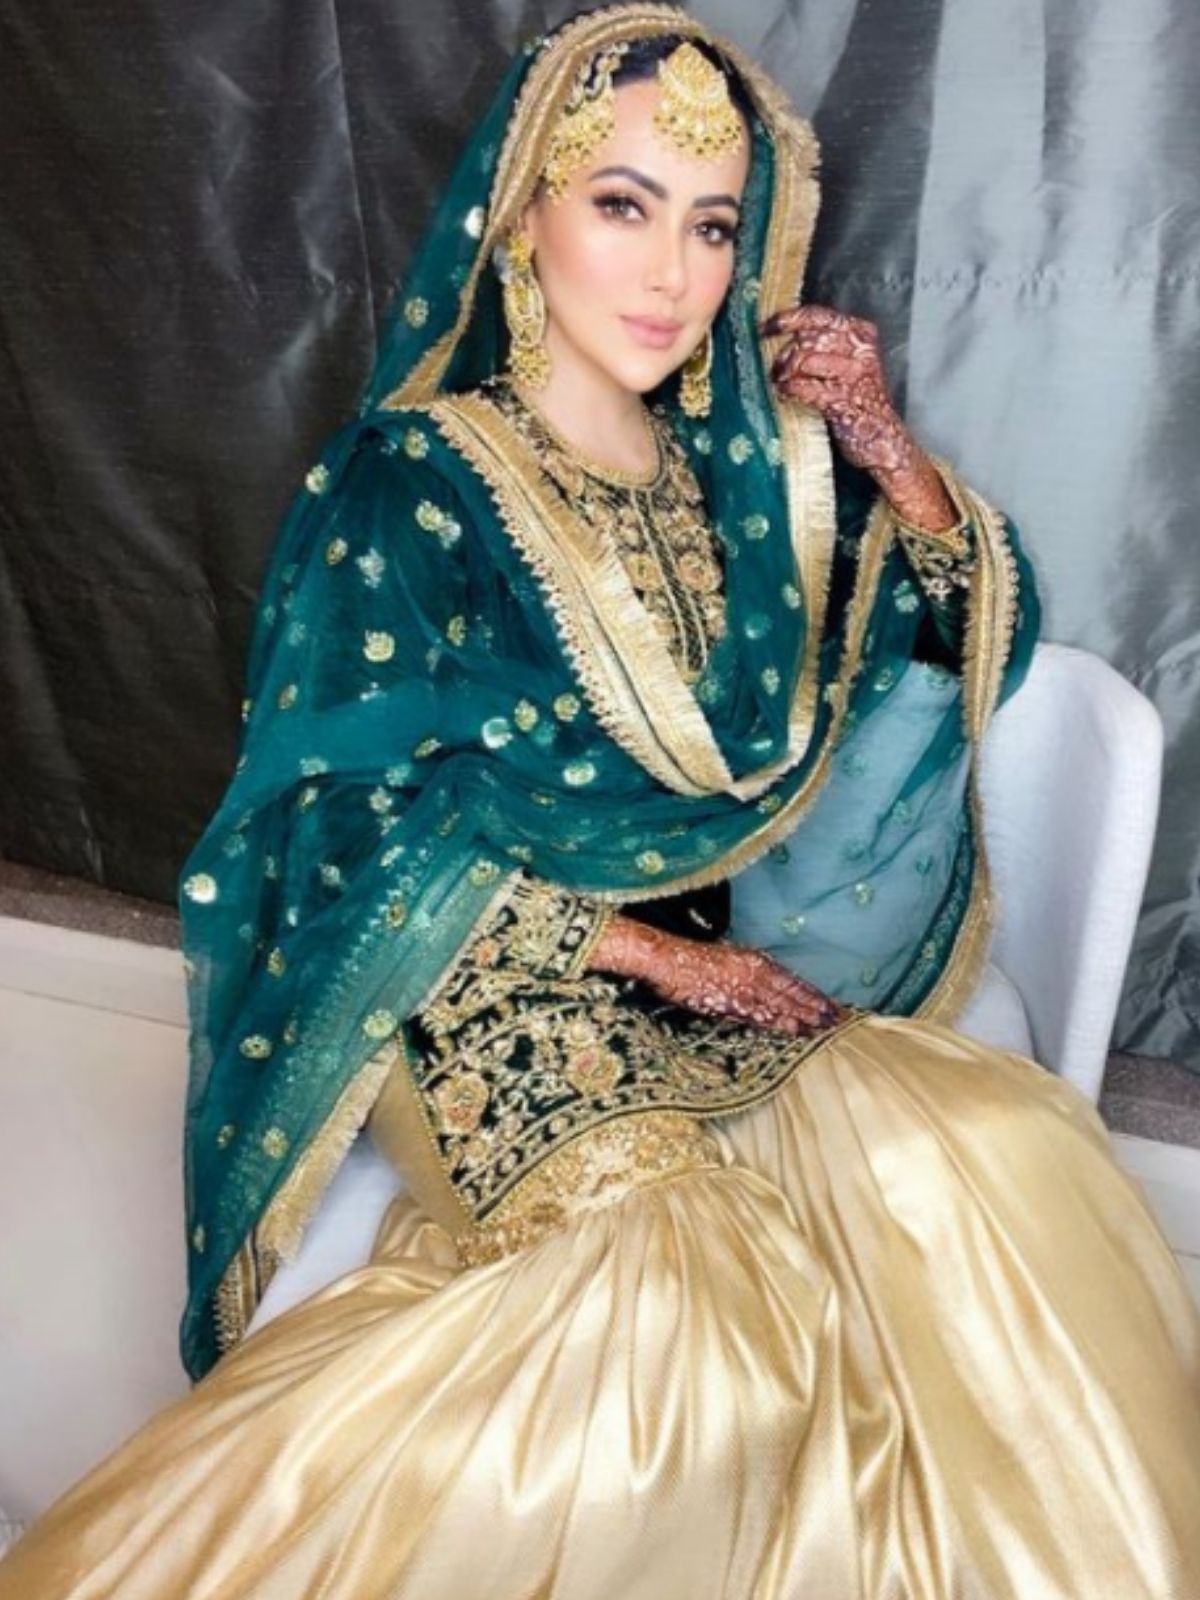  बता दें, शादी के बाद सना खान पति और अपने ससुरालवालों के साथ क्वालिटी टाइम स्पेंड कर रही हैं. जिसकी जानकारी वह सोशल मीडिया के जरिए दे रही हैं. (Photo Credit: instagram/@sanakhaan21)